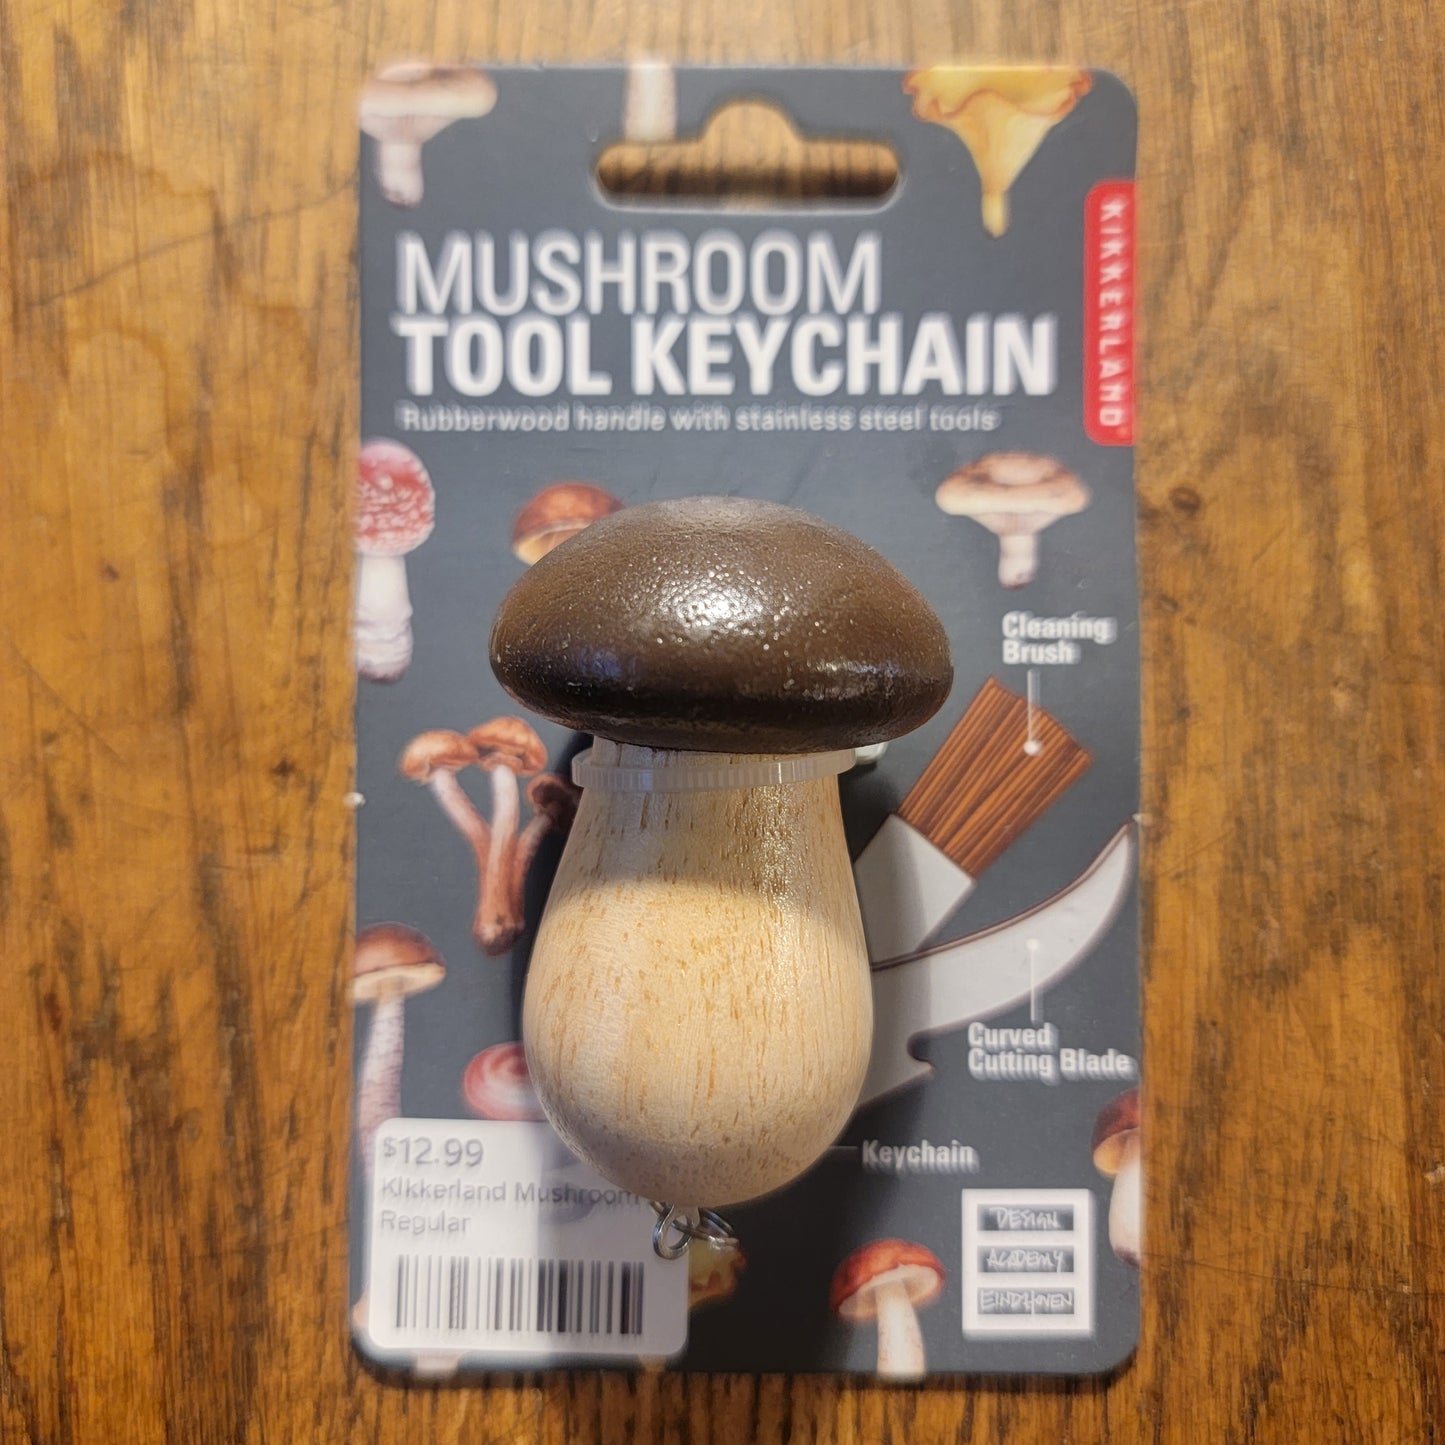 Kikkerland Mushroom Knife tool Keychain